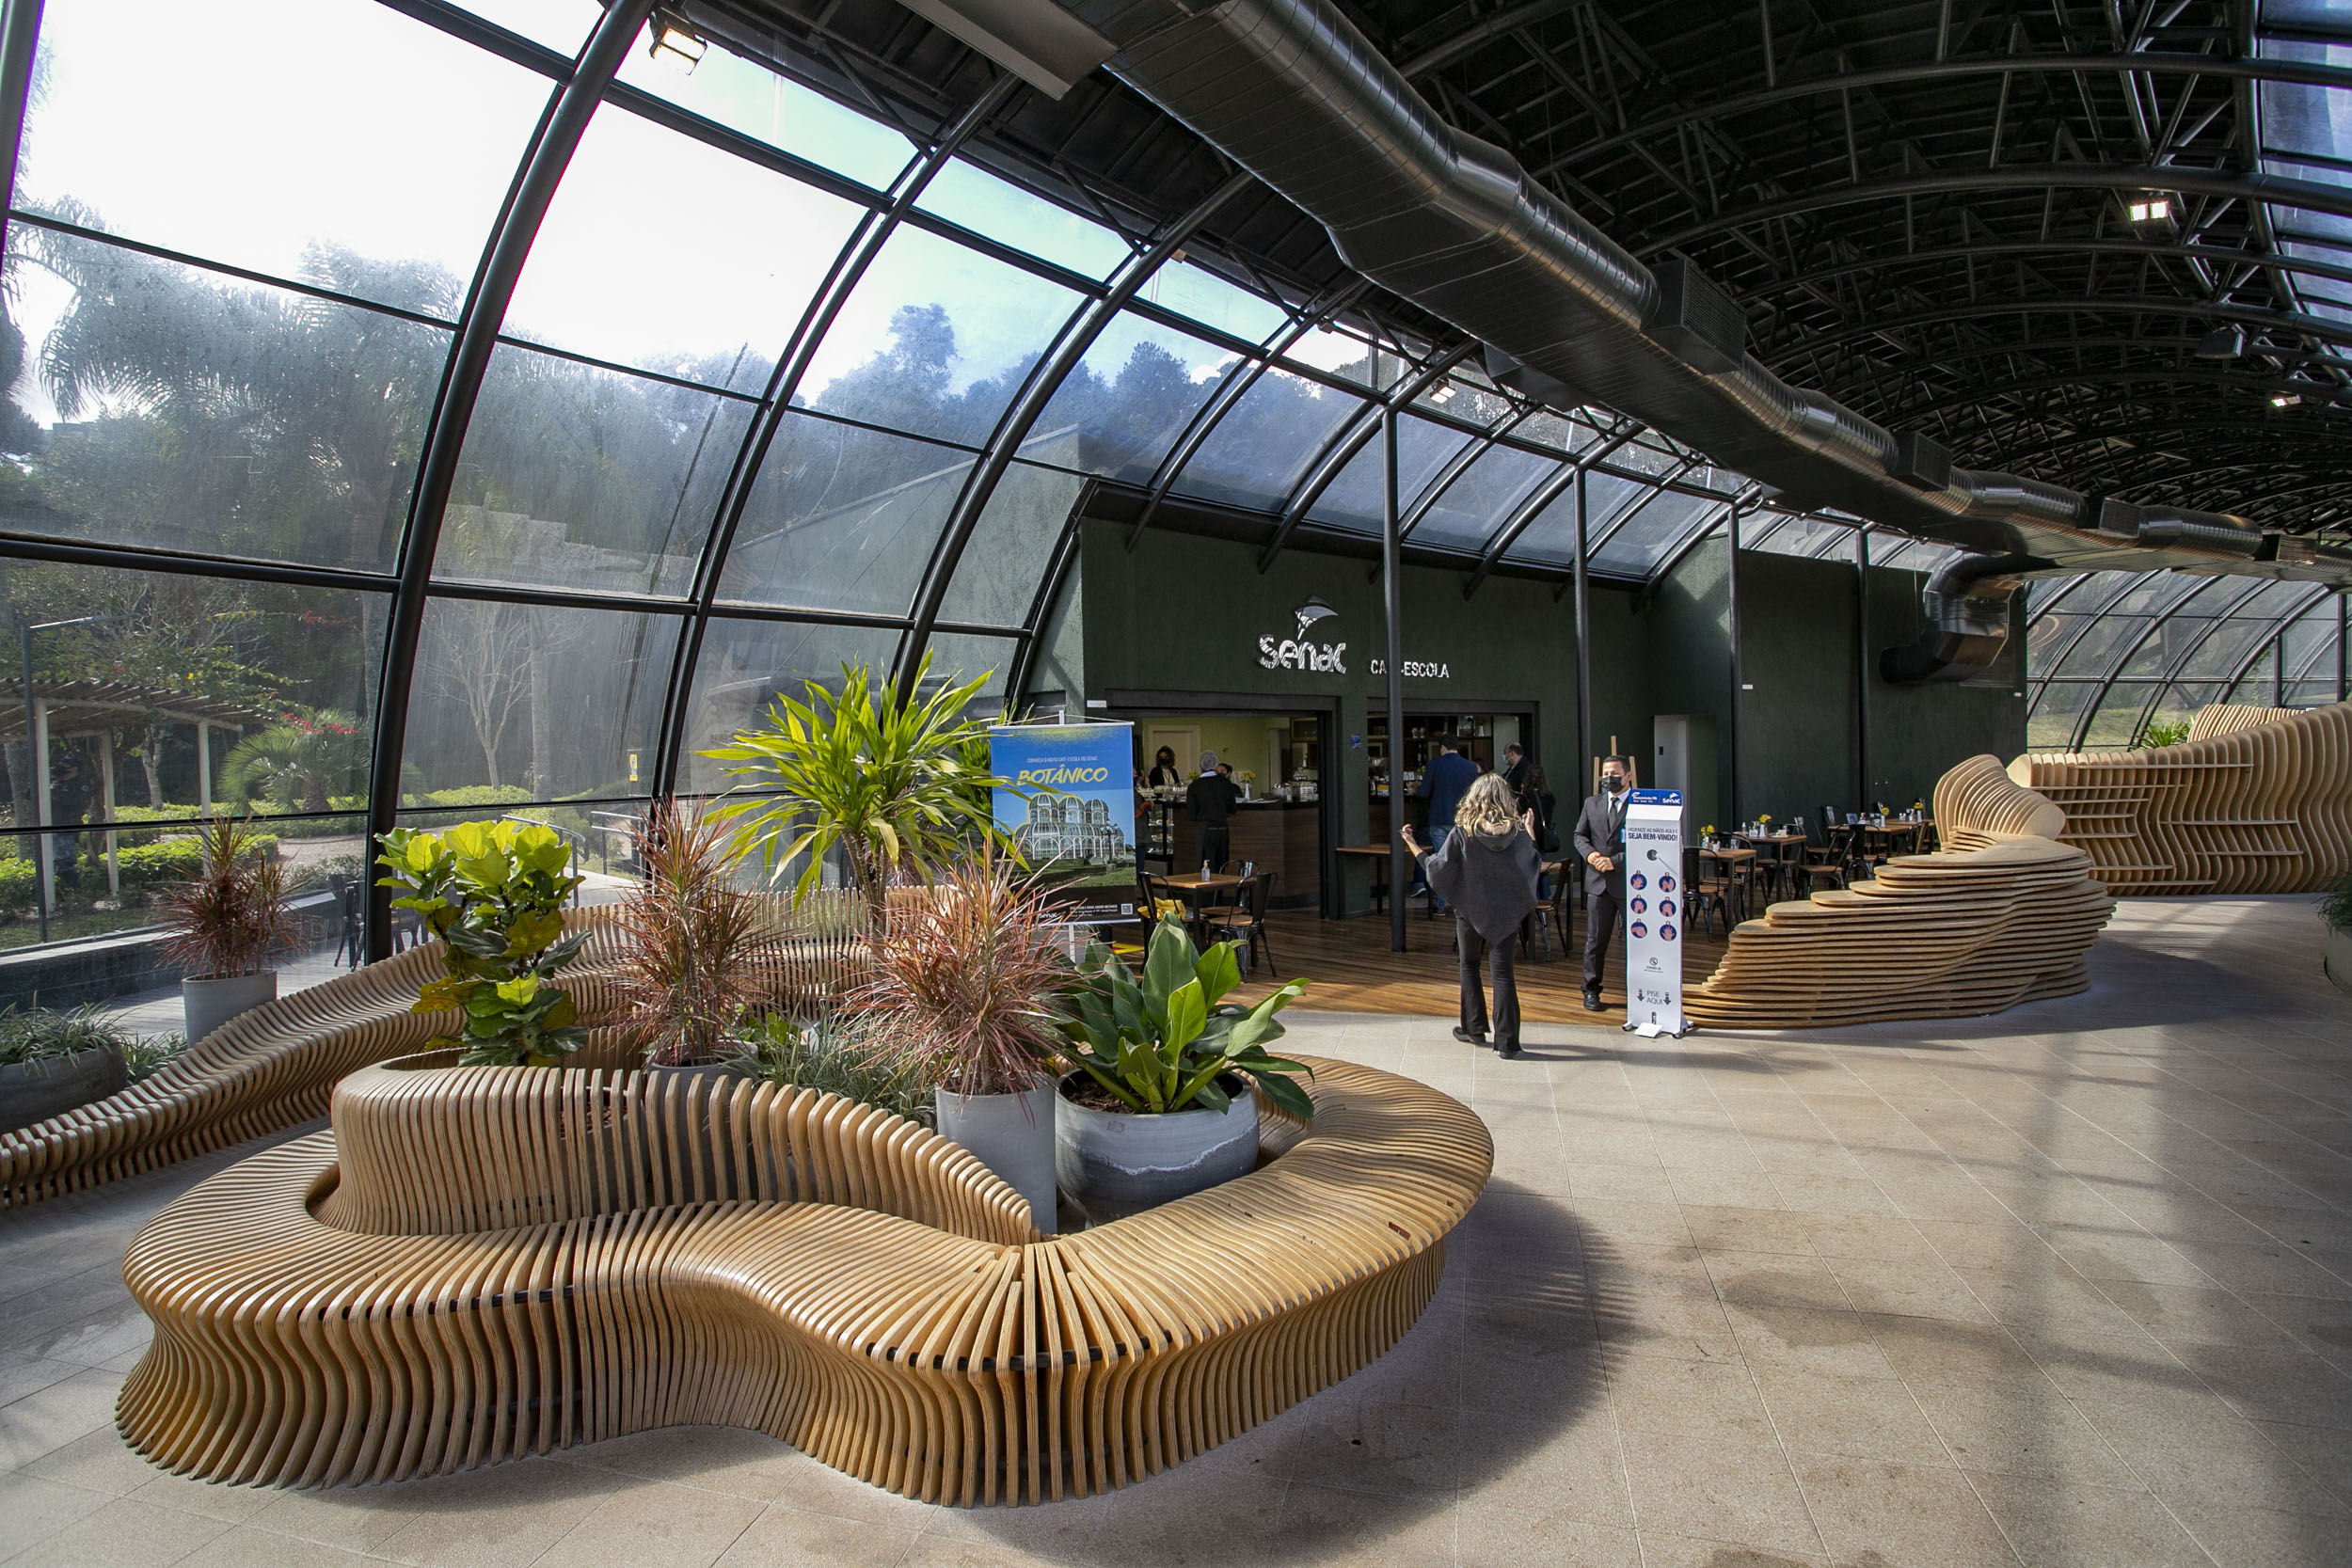 Café-escola do Senac é aberto no Jardim Botânico de Curitiba